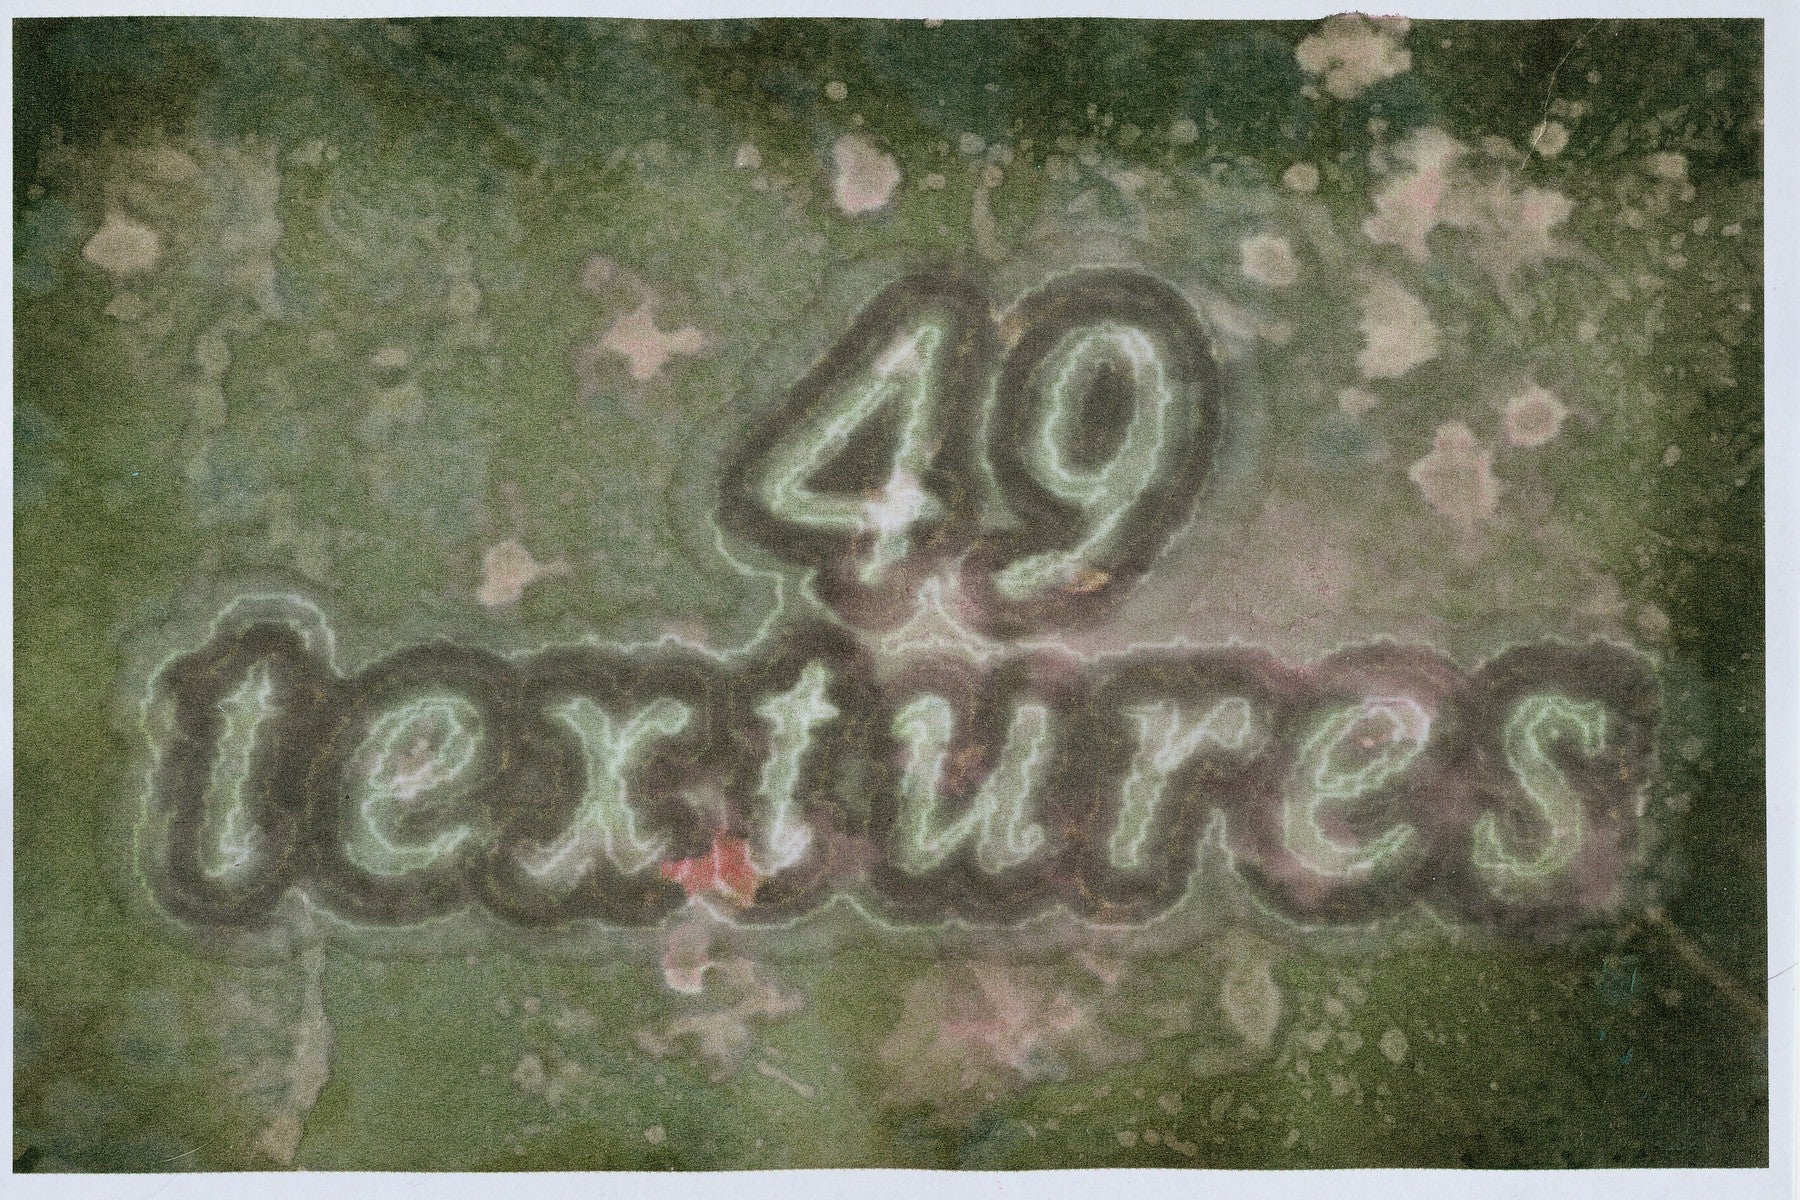 ACID WASH - Vintage Grunge Paper Textures